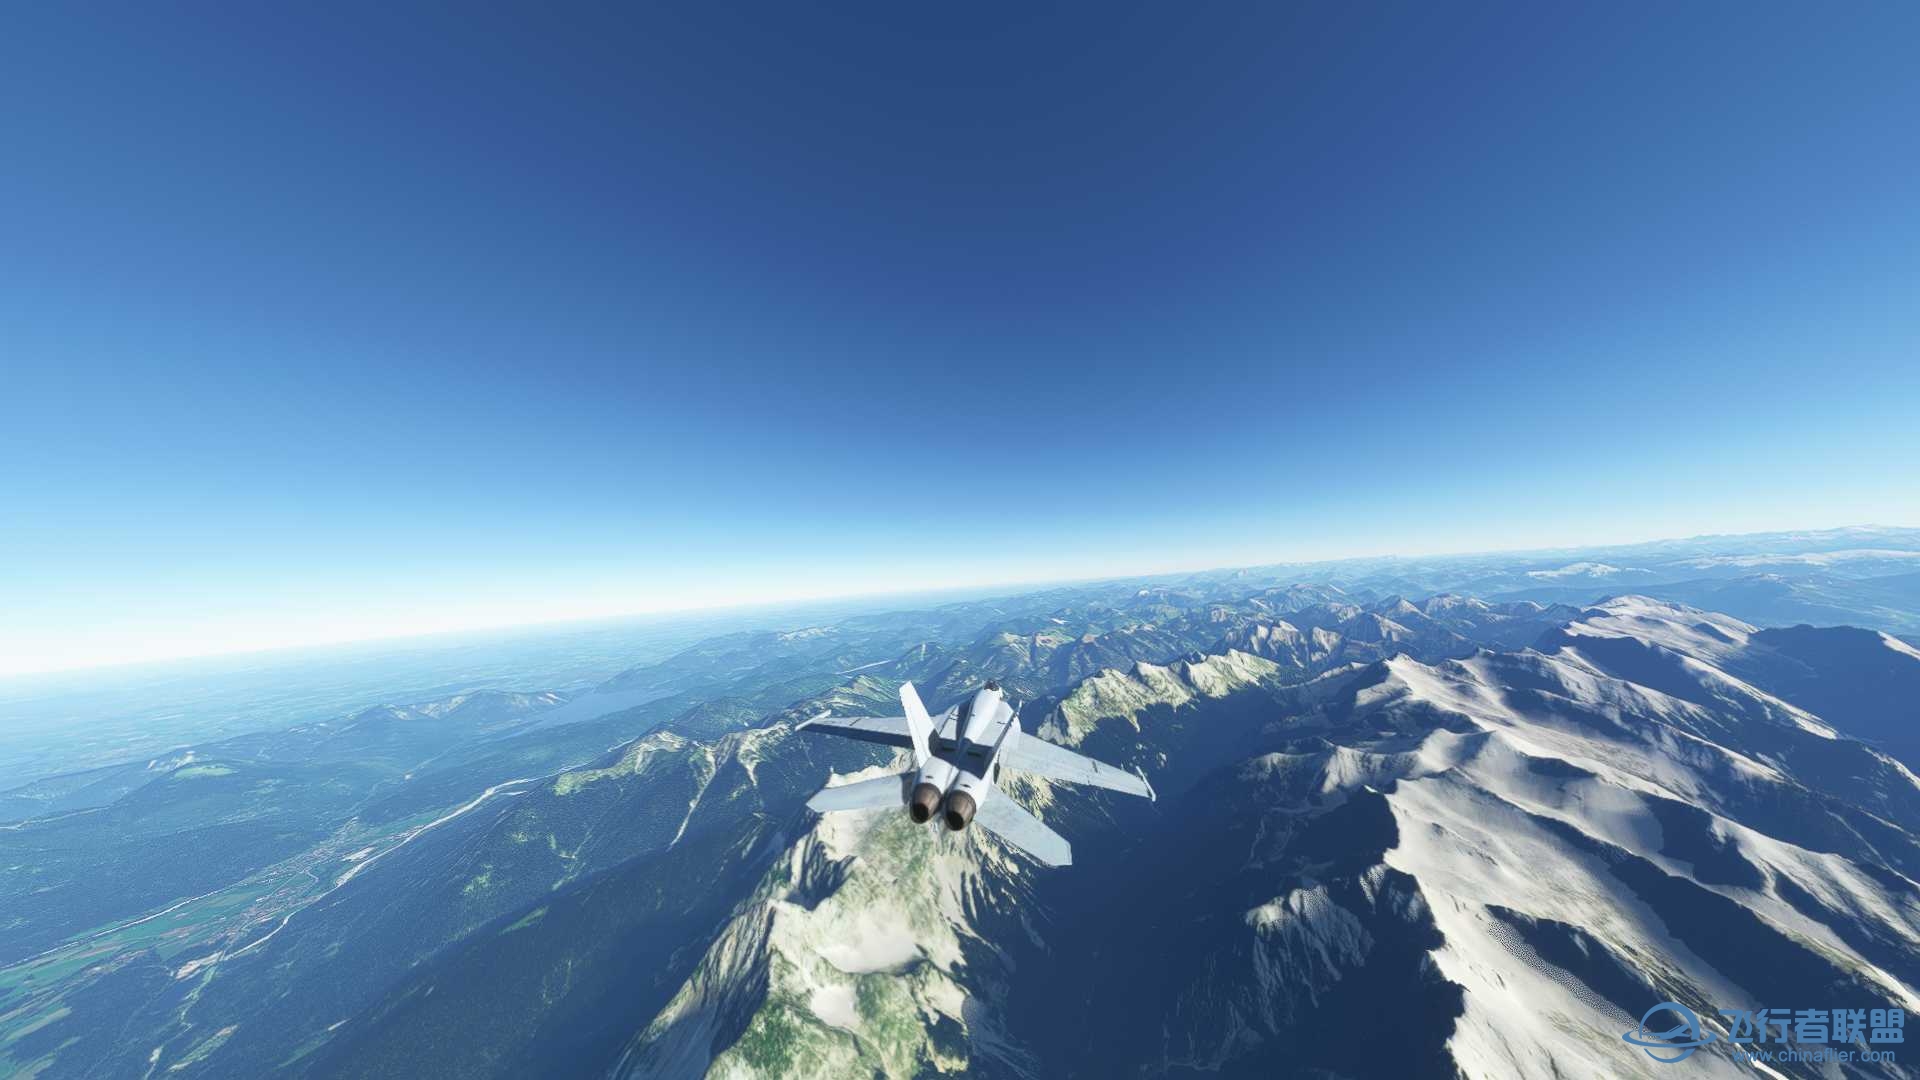 阿尔卑斯山脉附近飞行无法进行游戏-9224 